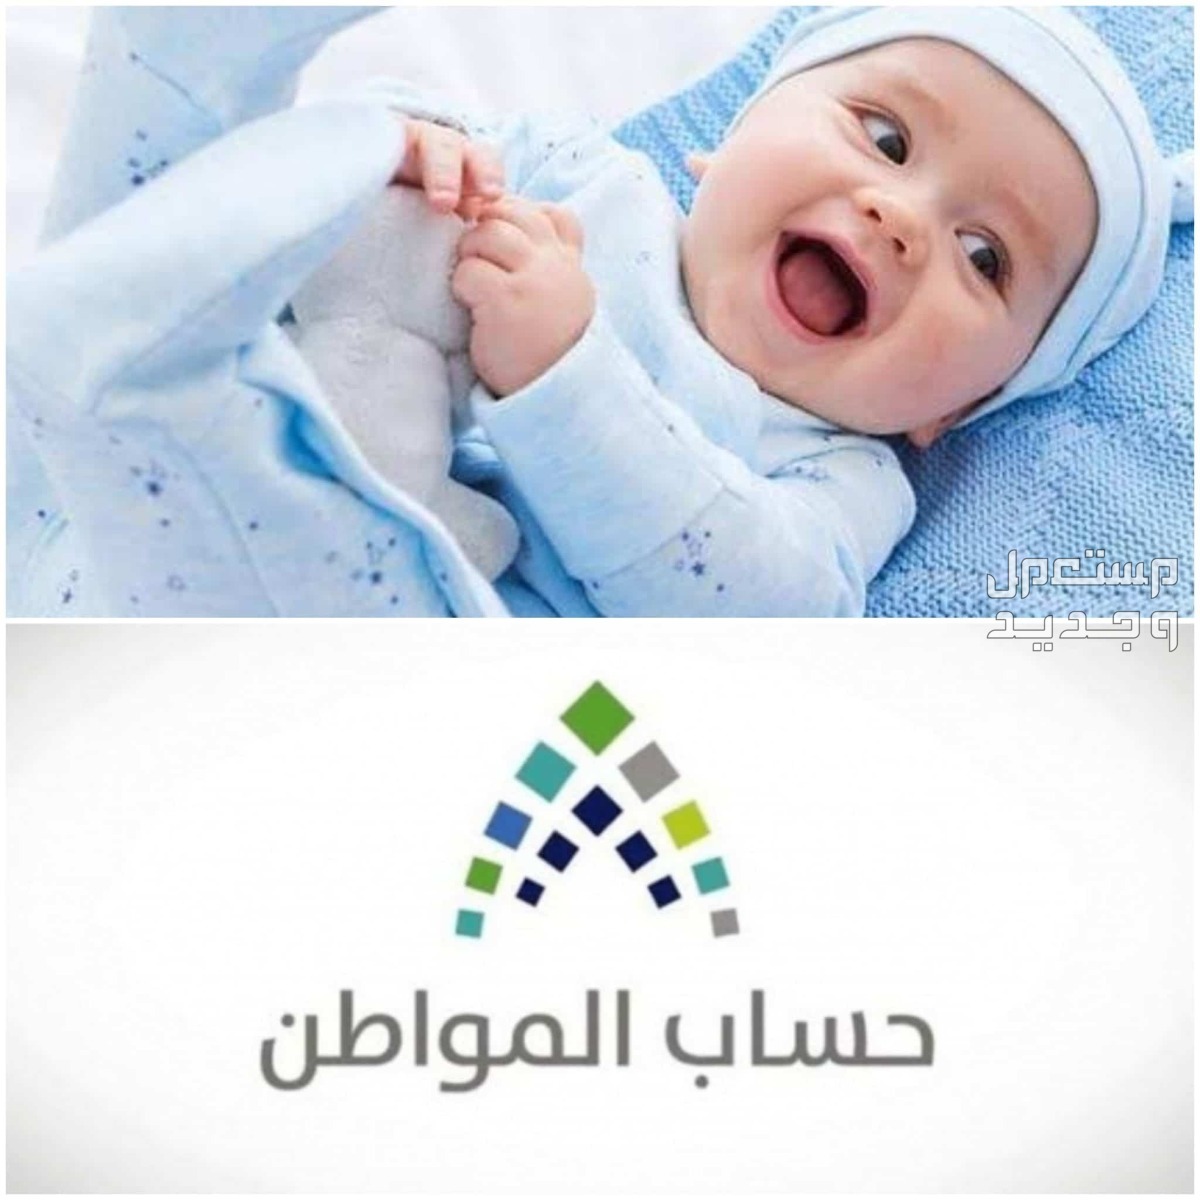 طريقة تسجيل المولود الجديد في حساب المواطن 1445 في البحرين تسجيل المولود الجديد في حساب المواطن